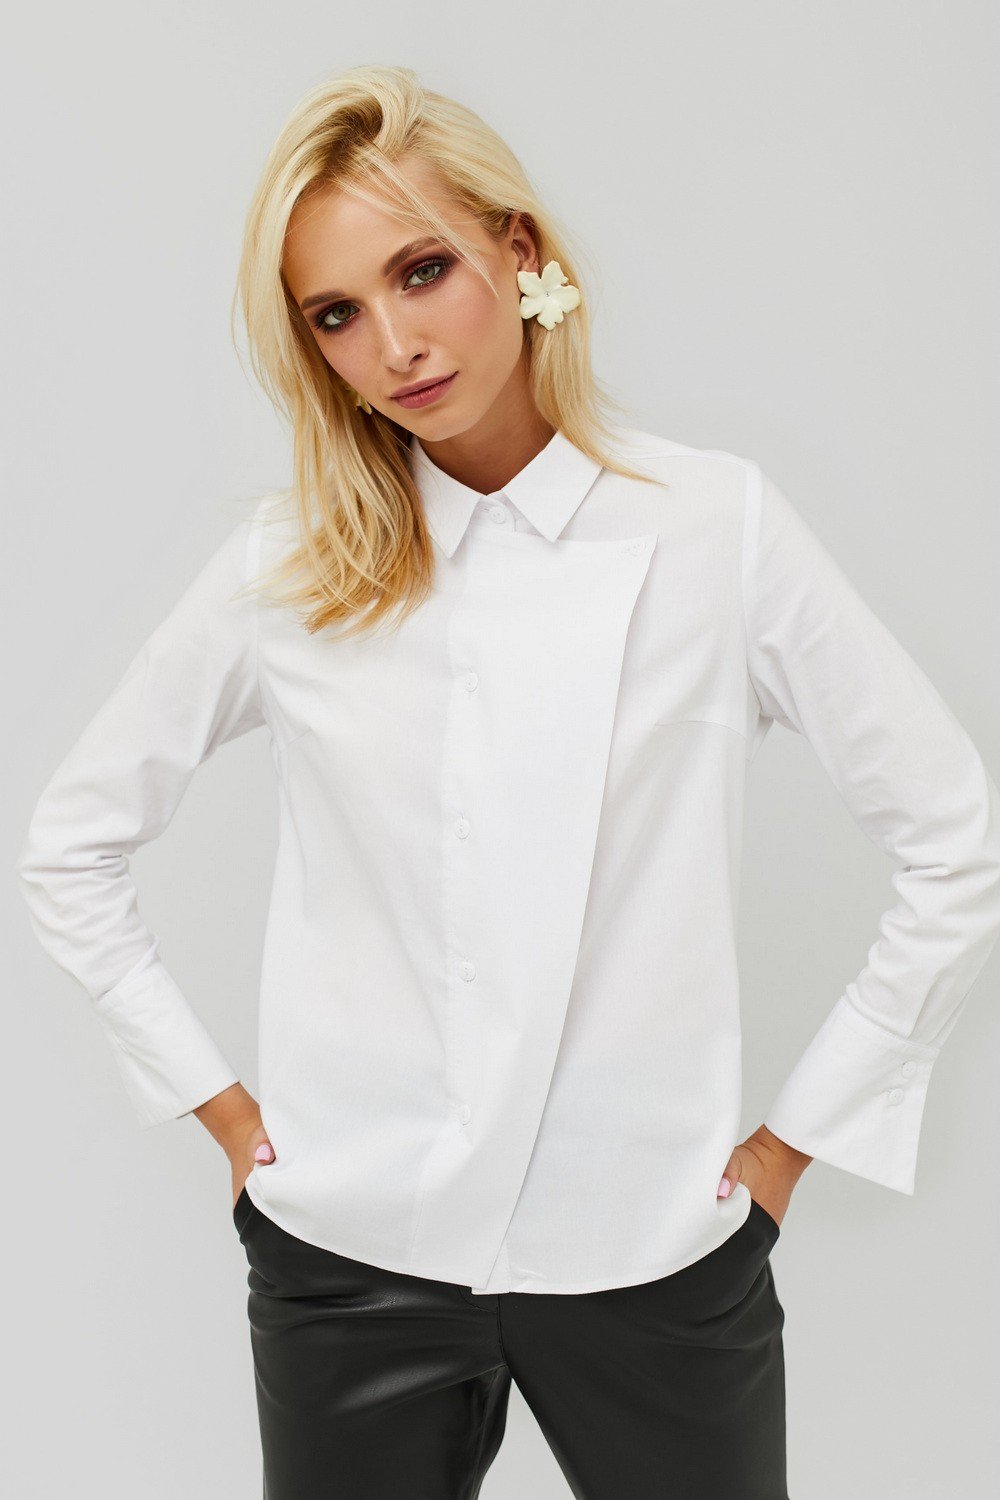 Купить белую рубашку женскую с длинным. Рубашка женская. Рубашки женские стильные. Белая рубашка. Белая блузка.